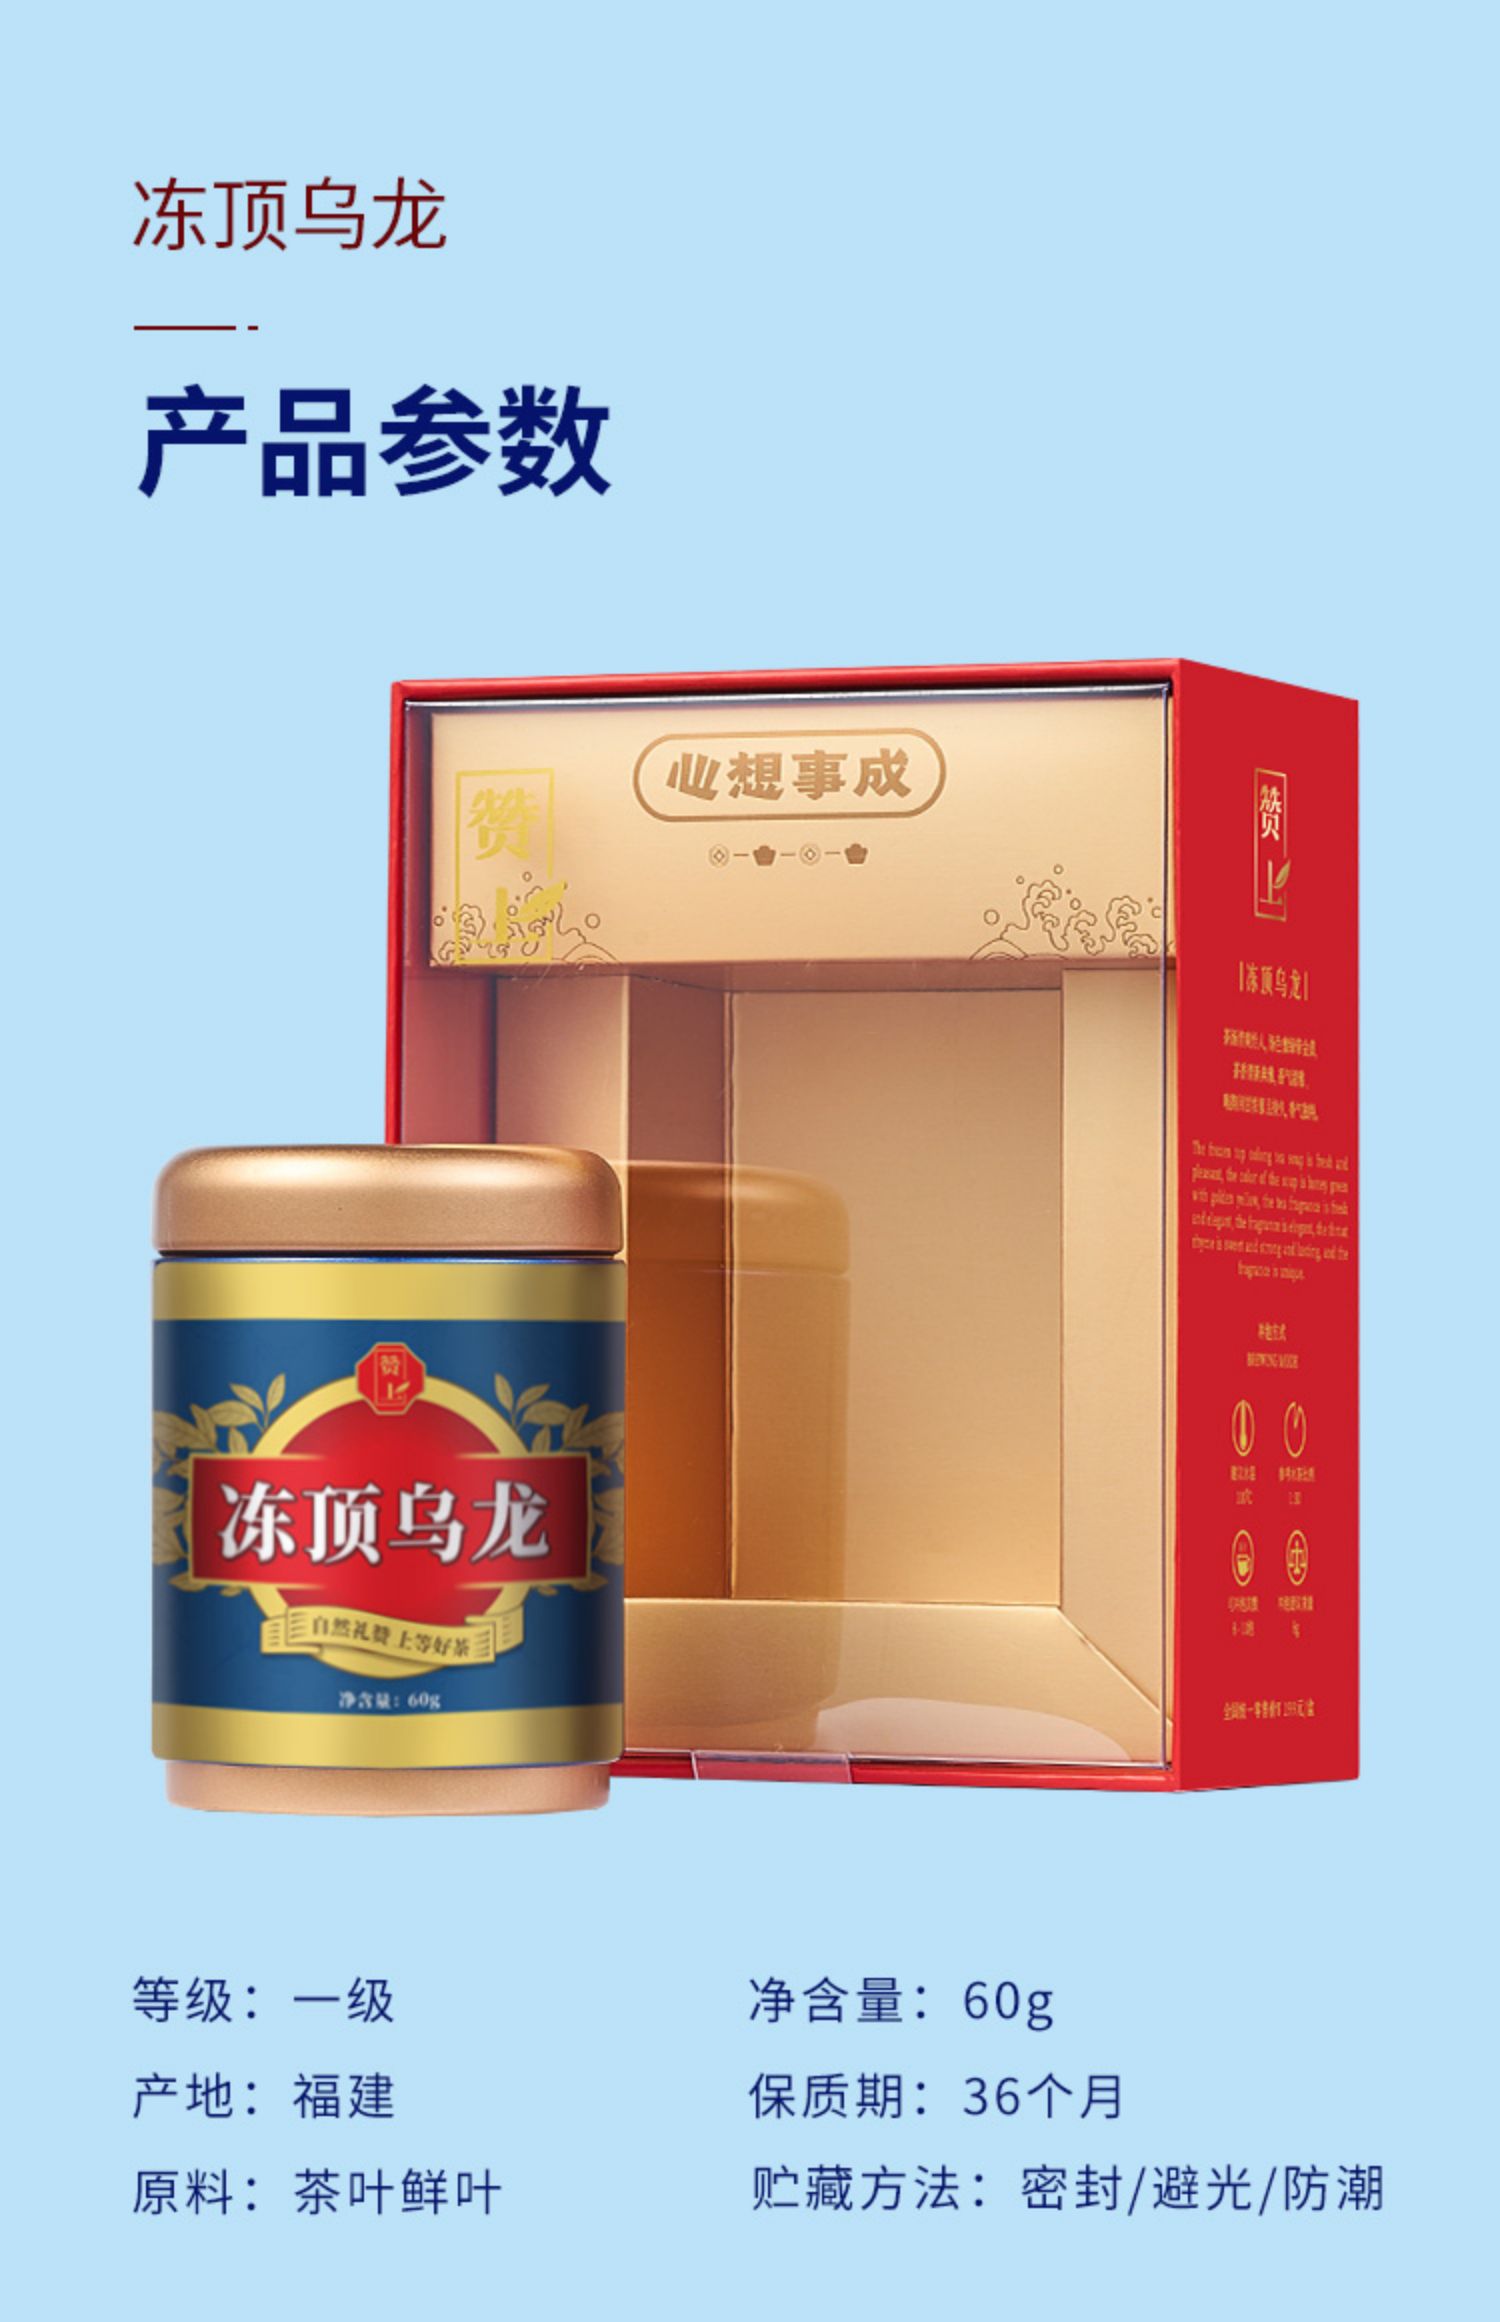 【赞上】冻顶乌龙茶台湾高山茶茶叶礼盒装